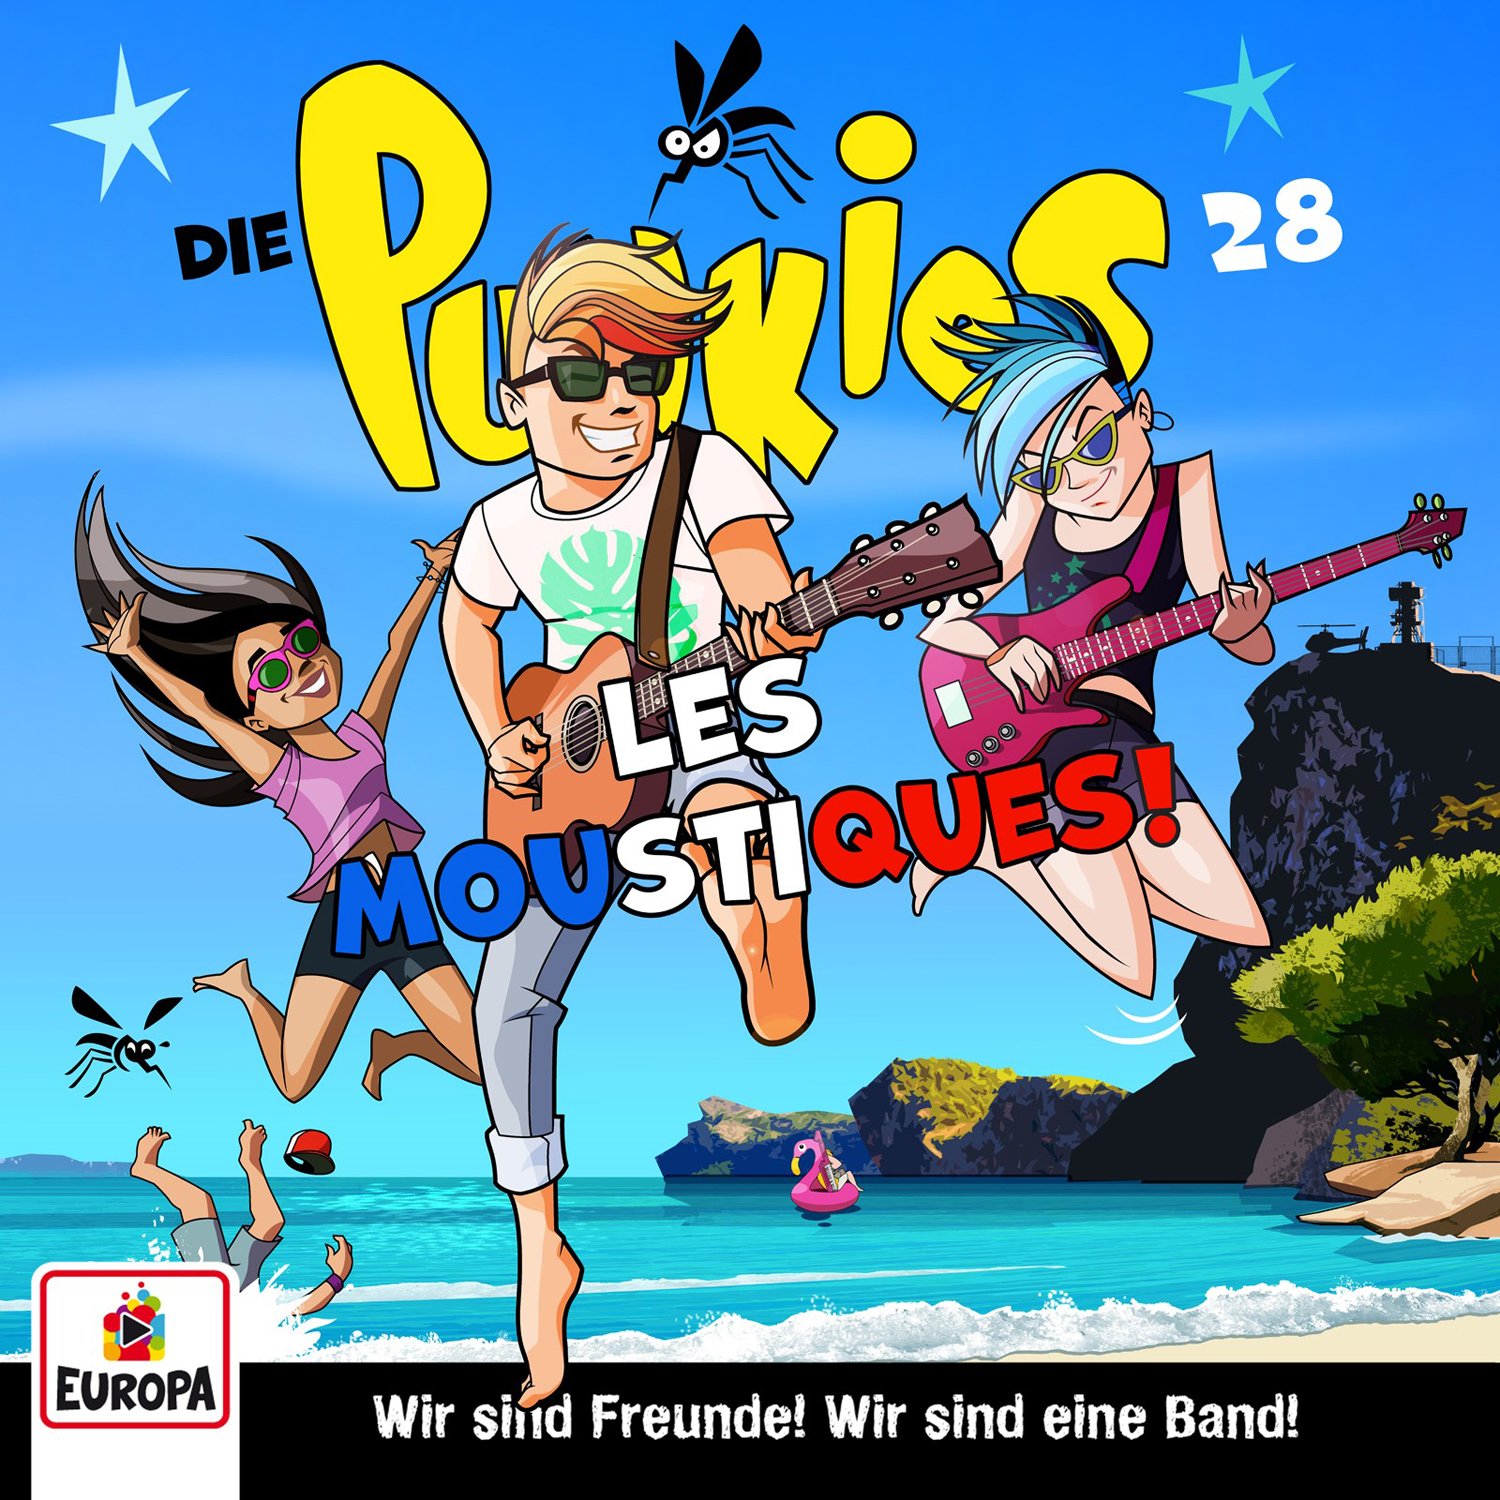 Die Punkies : Les Moustiques!